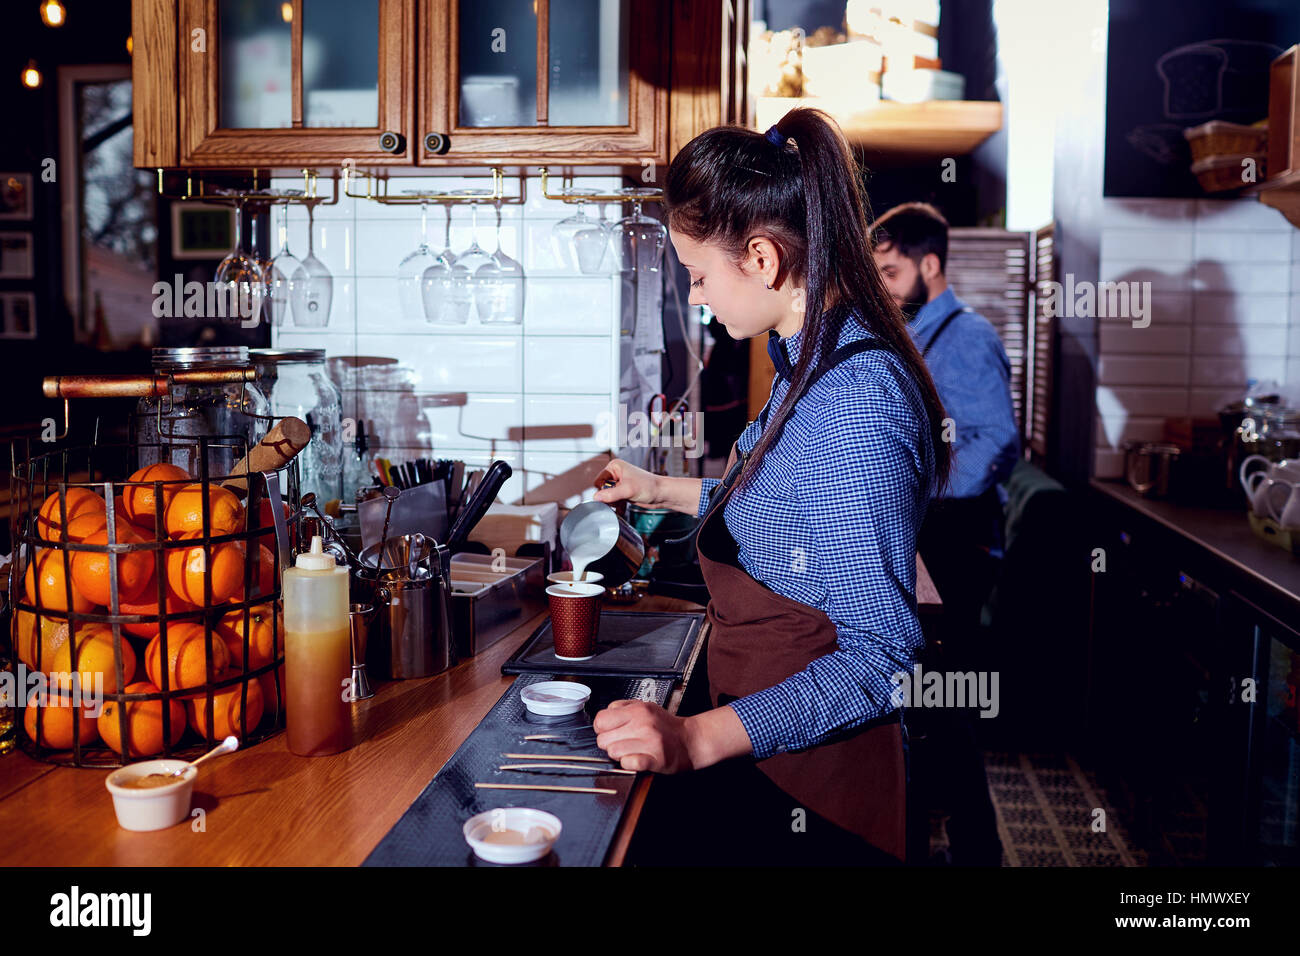 El barman barista girl hace leche caliente en el bar cafetería res Foto de stock